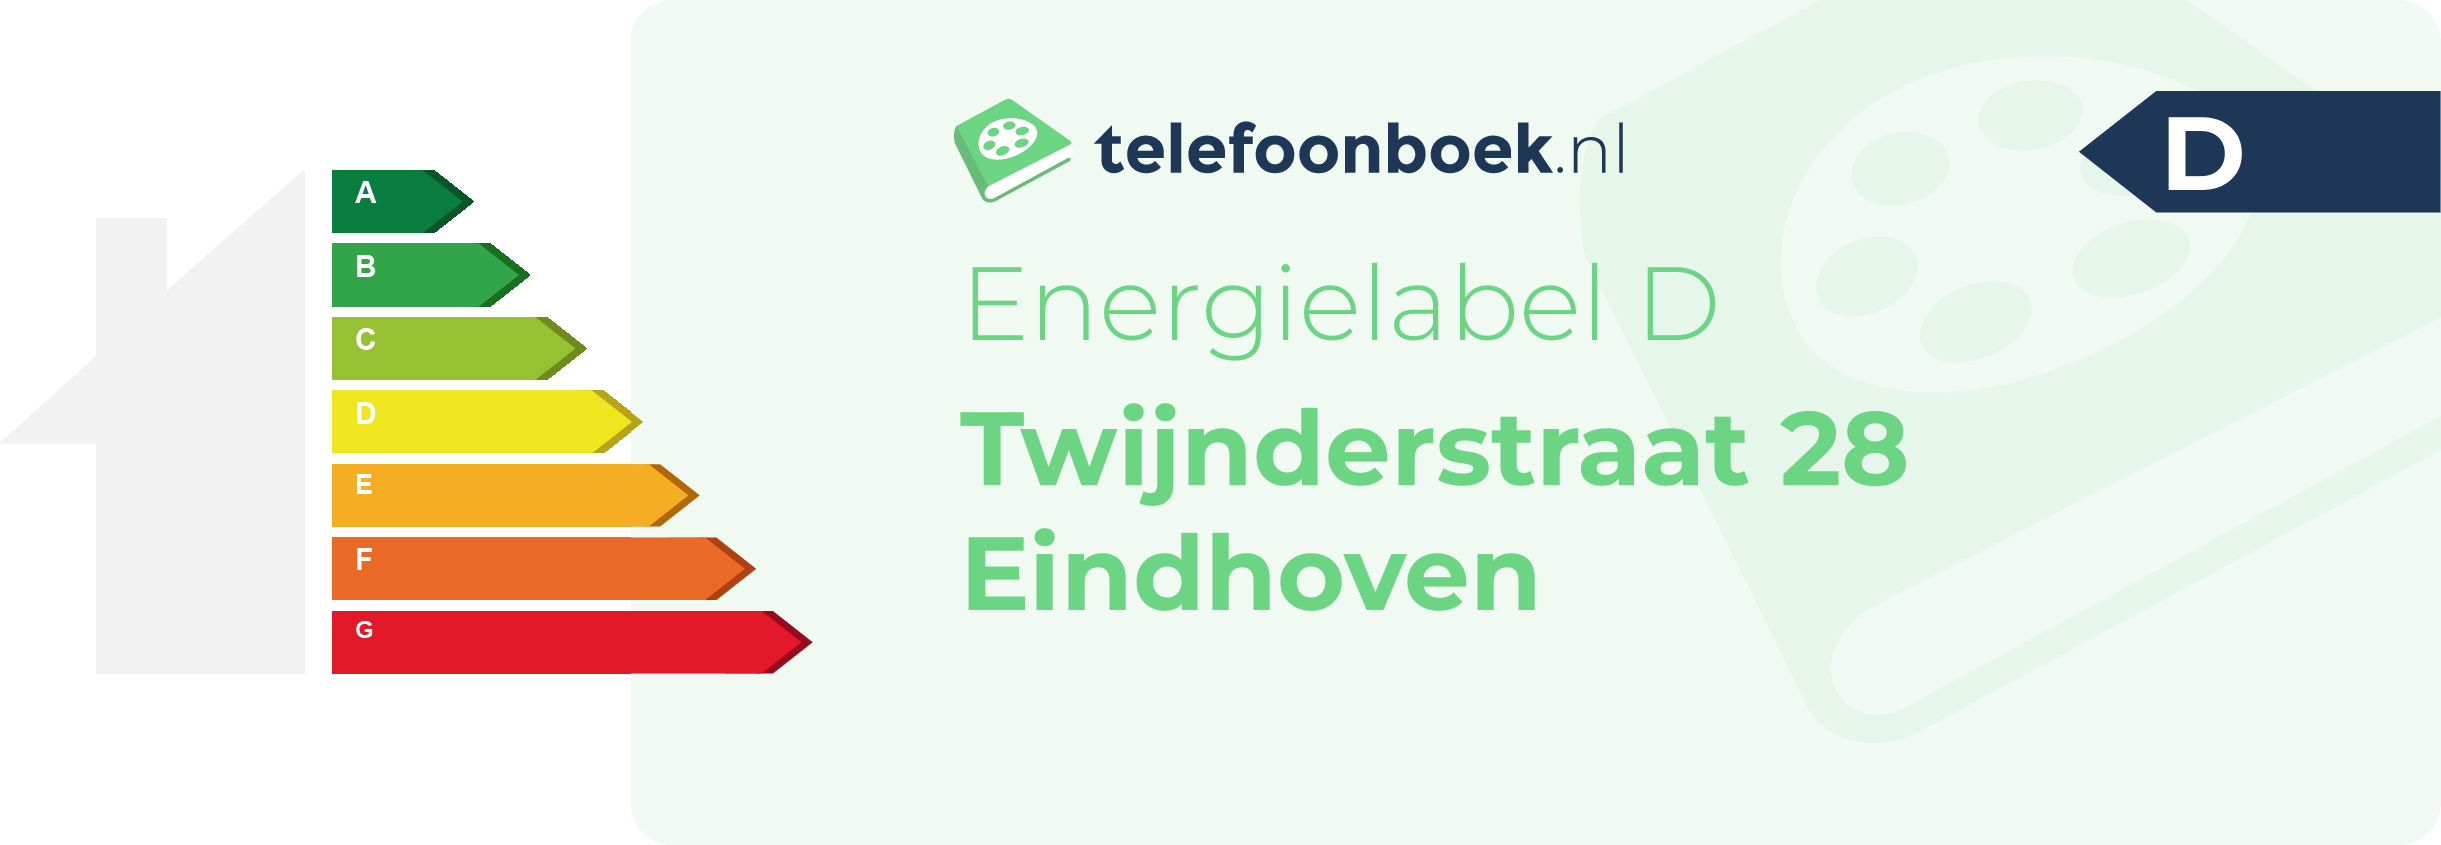 Energielabel Twijnderstraat 28 Eindhoven